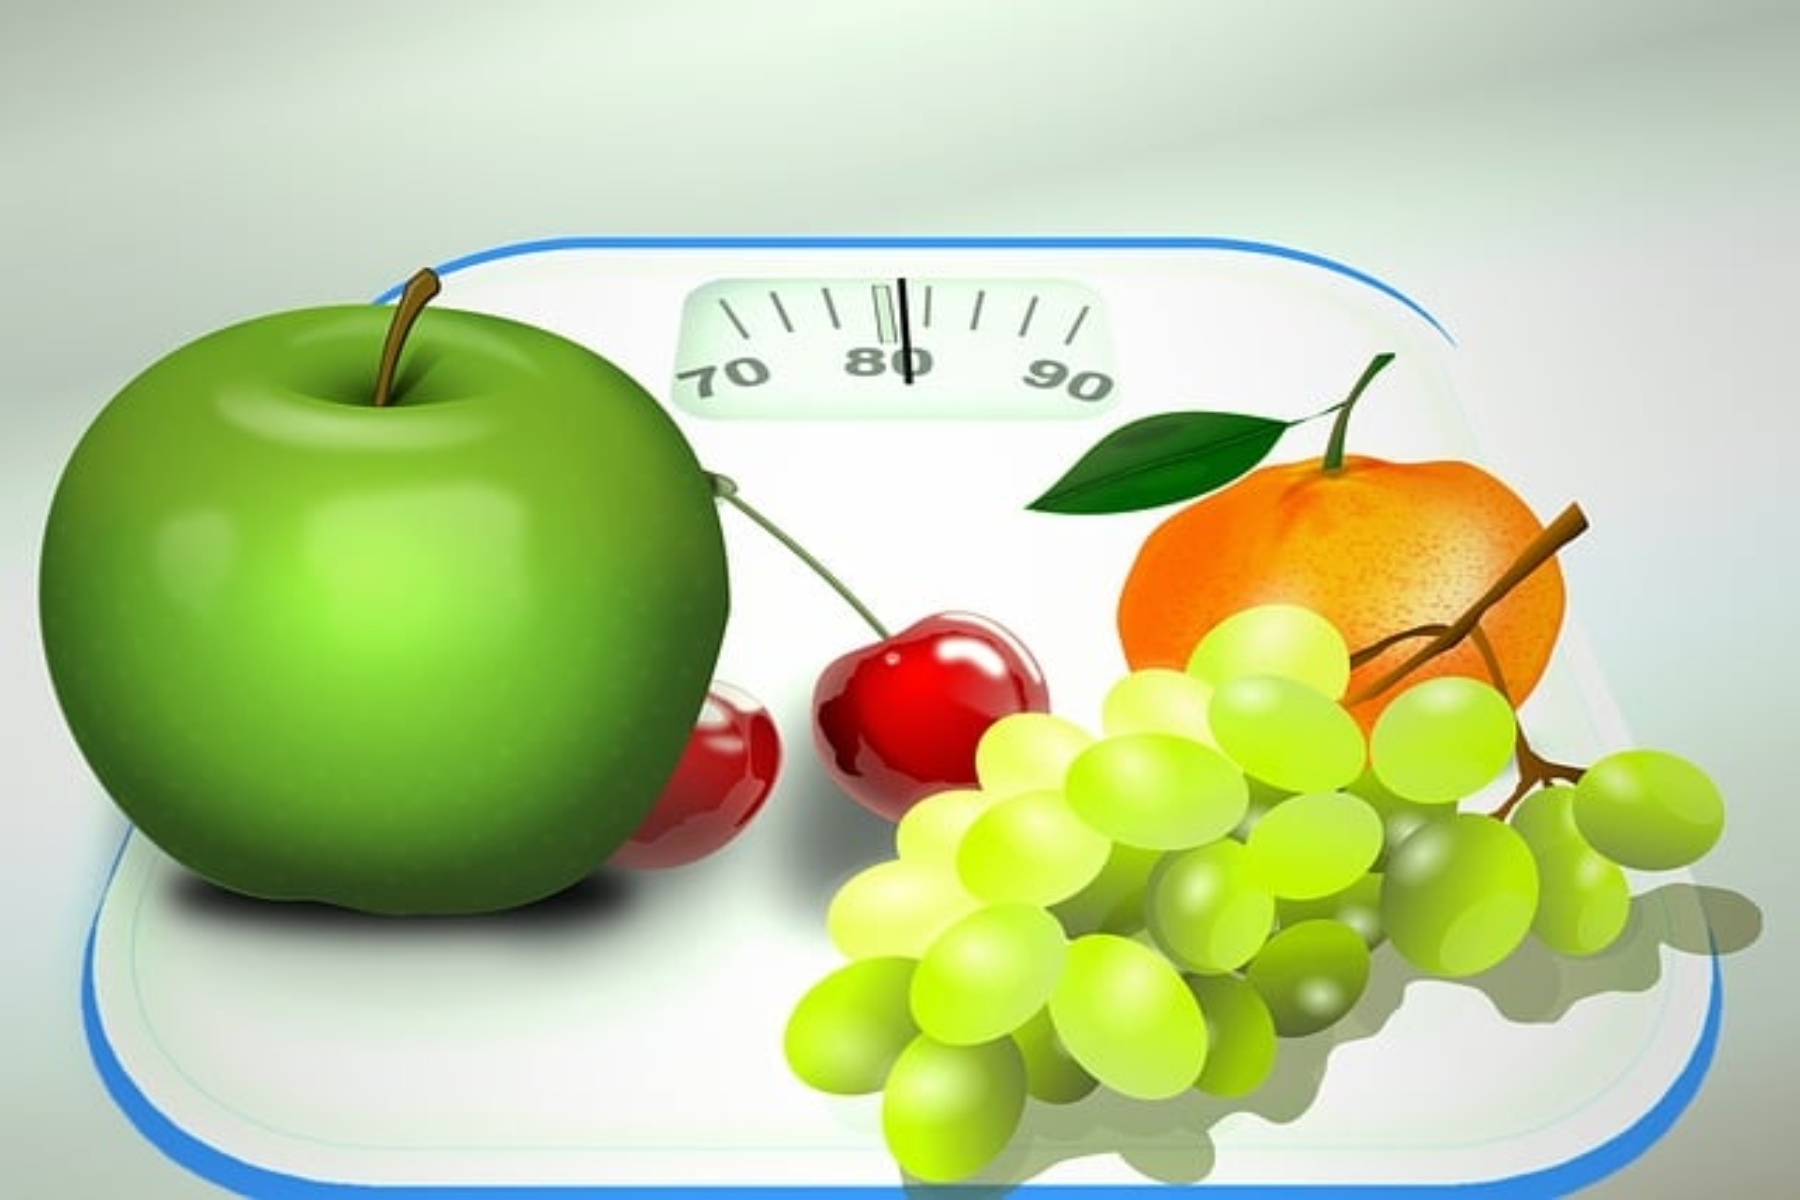 Πώς καθορίζεται το υγιές σωματικό βάρος;